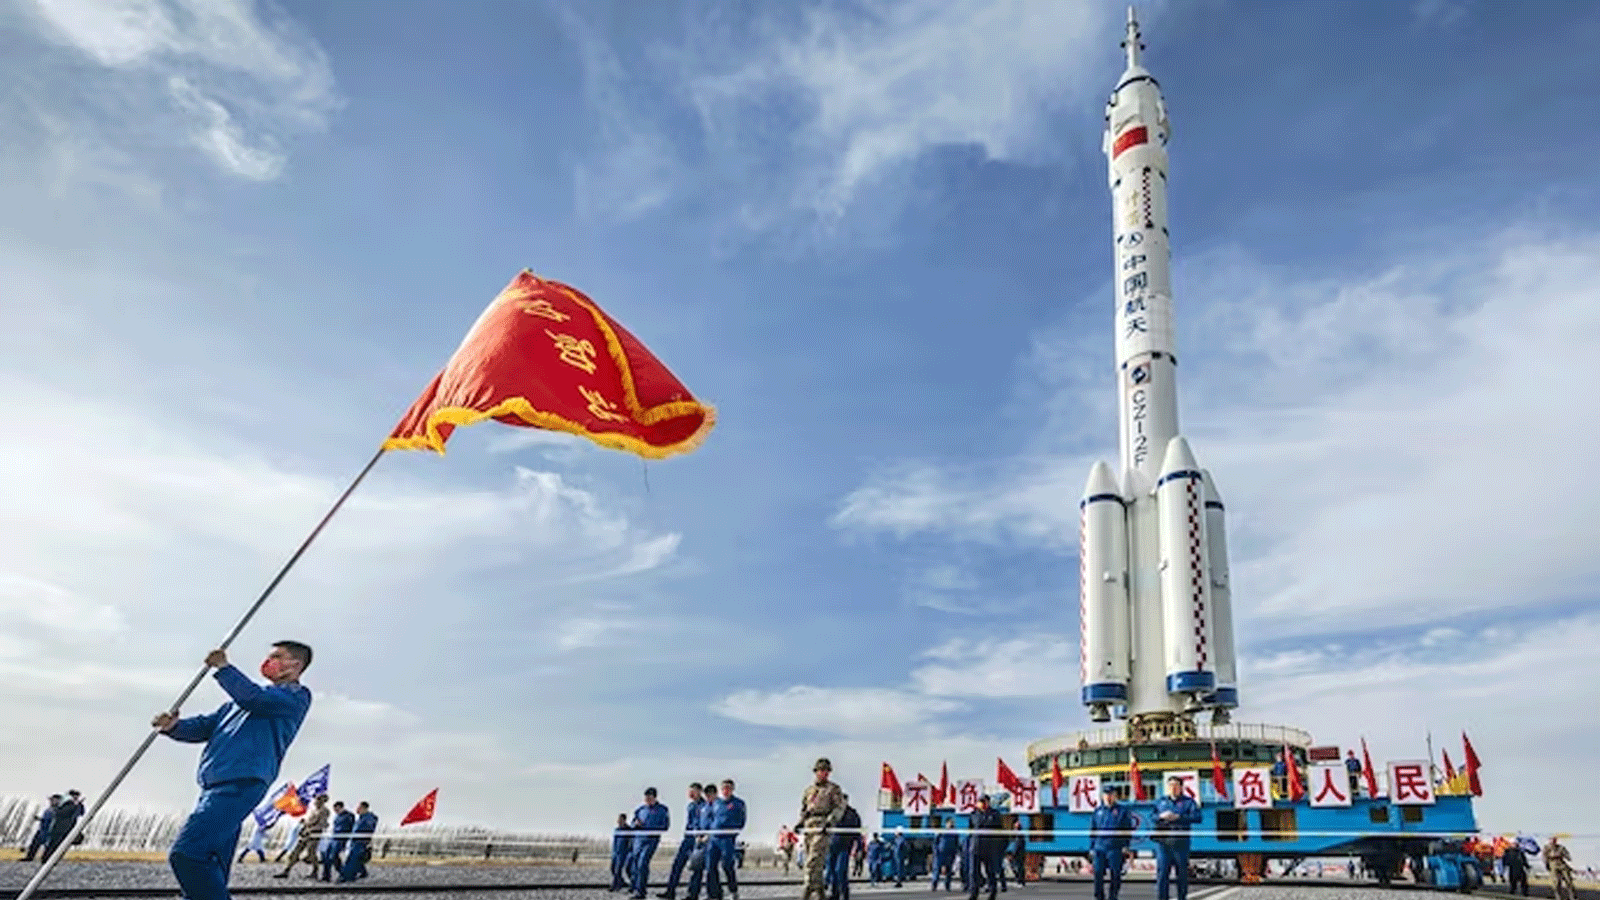 الصين تُخطّط لإنزال رواد فضاء على سطح القمر قبل عام 2030، بعدما بنت محطتها الفضائية الخاصة عقب استبعادها من محطة الفضاء الدولية